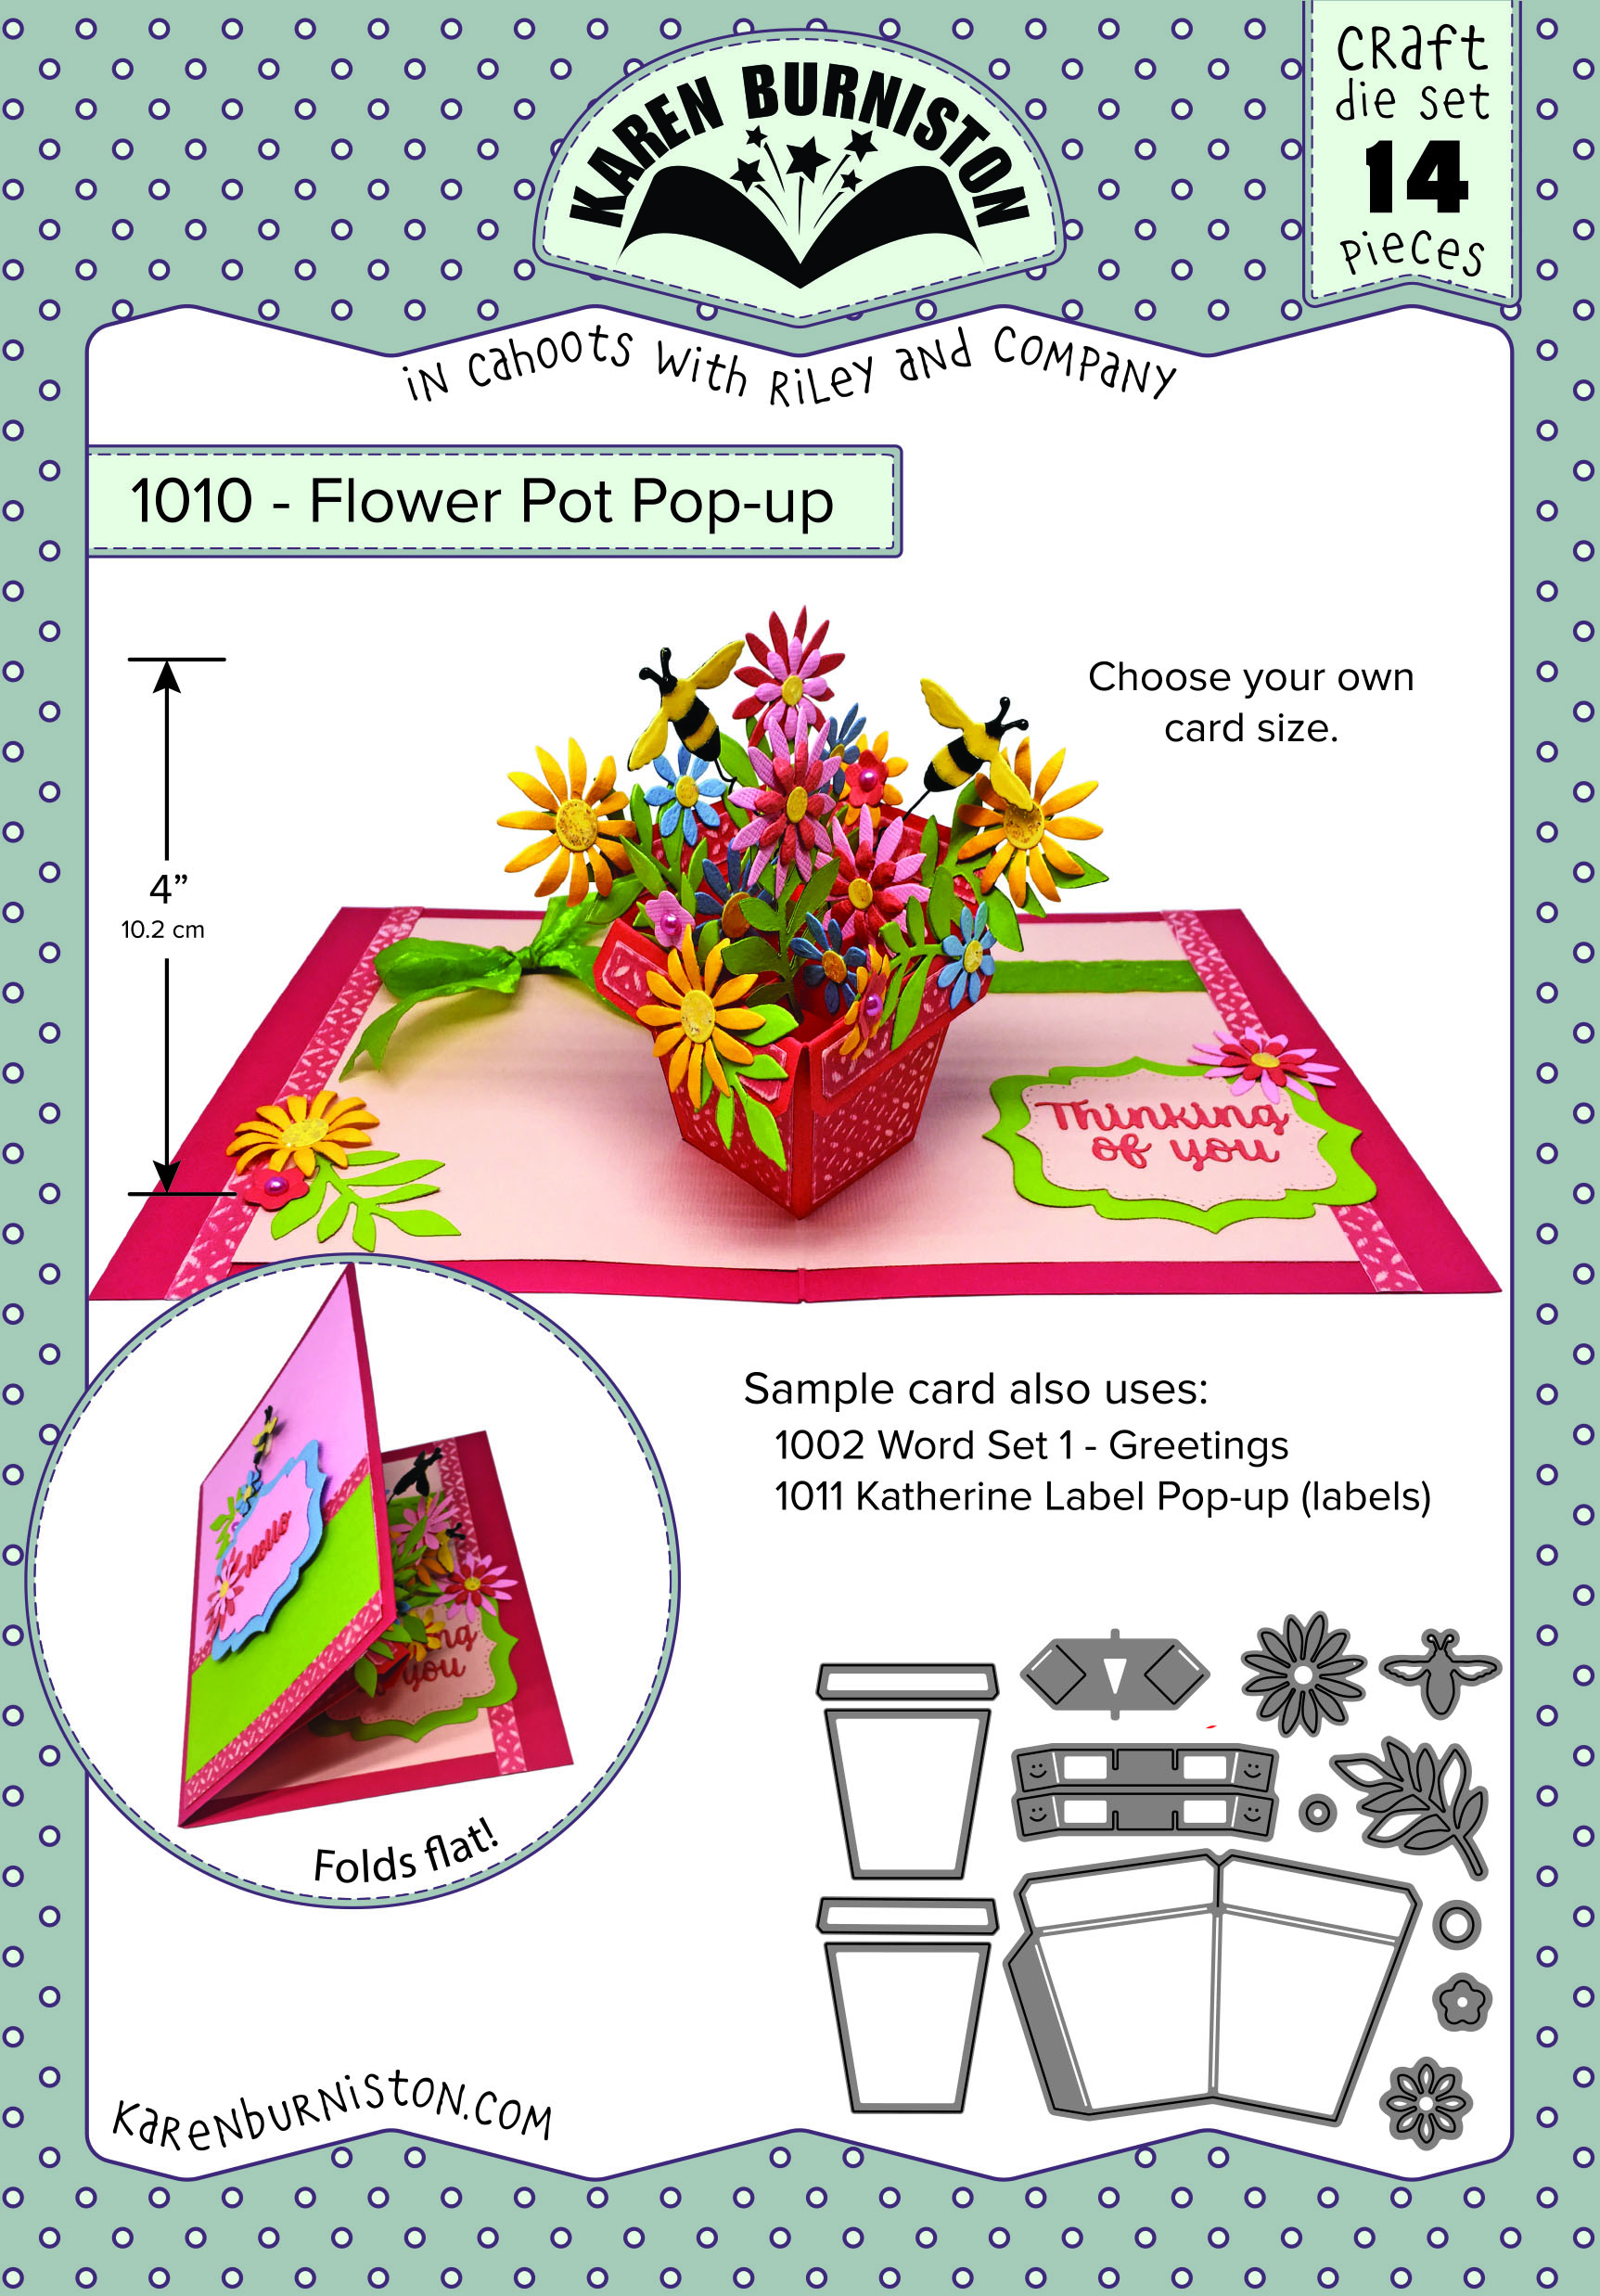 1010-flowerpotpopup.jpg